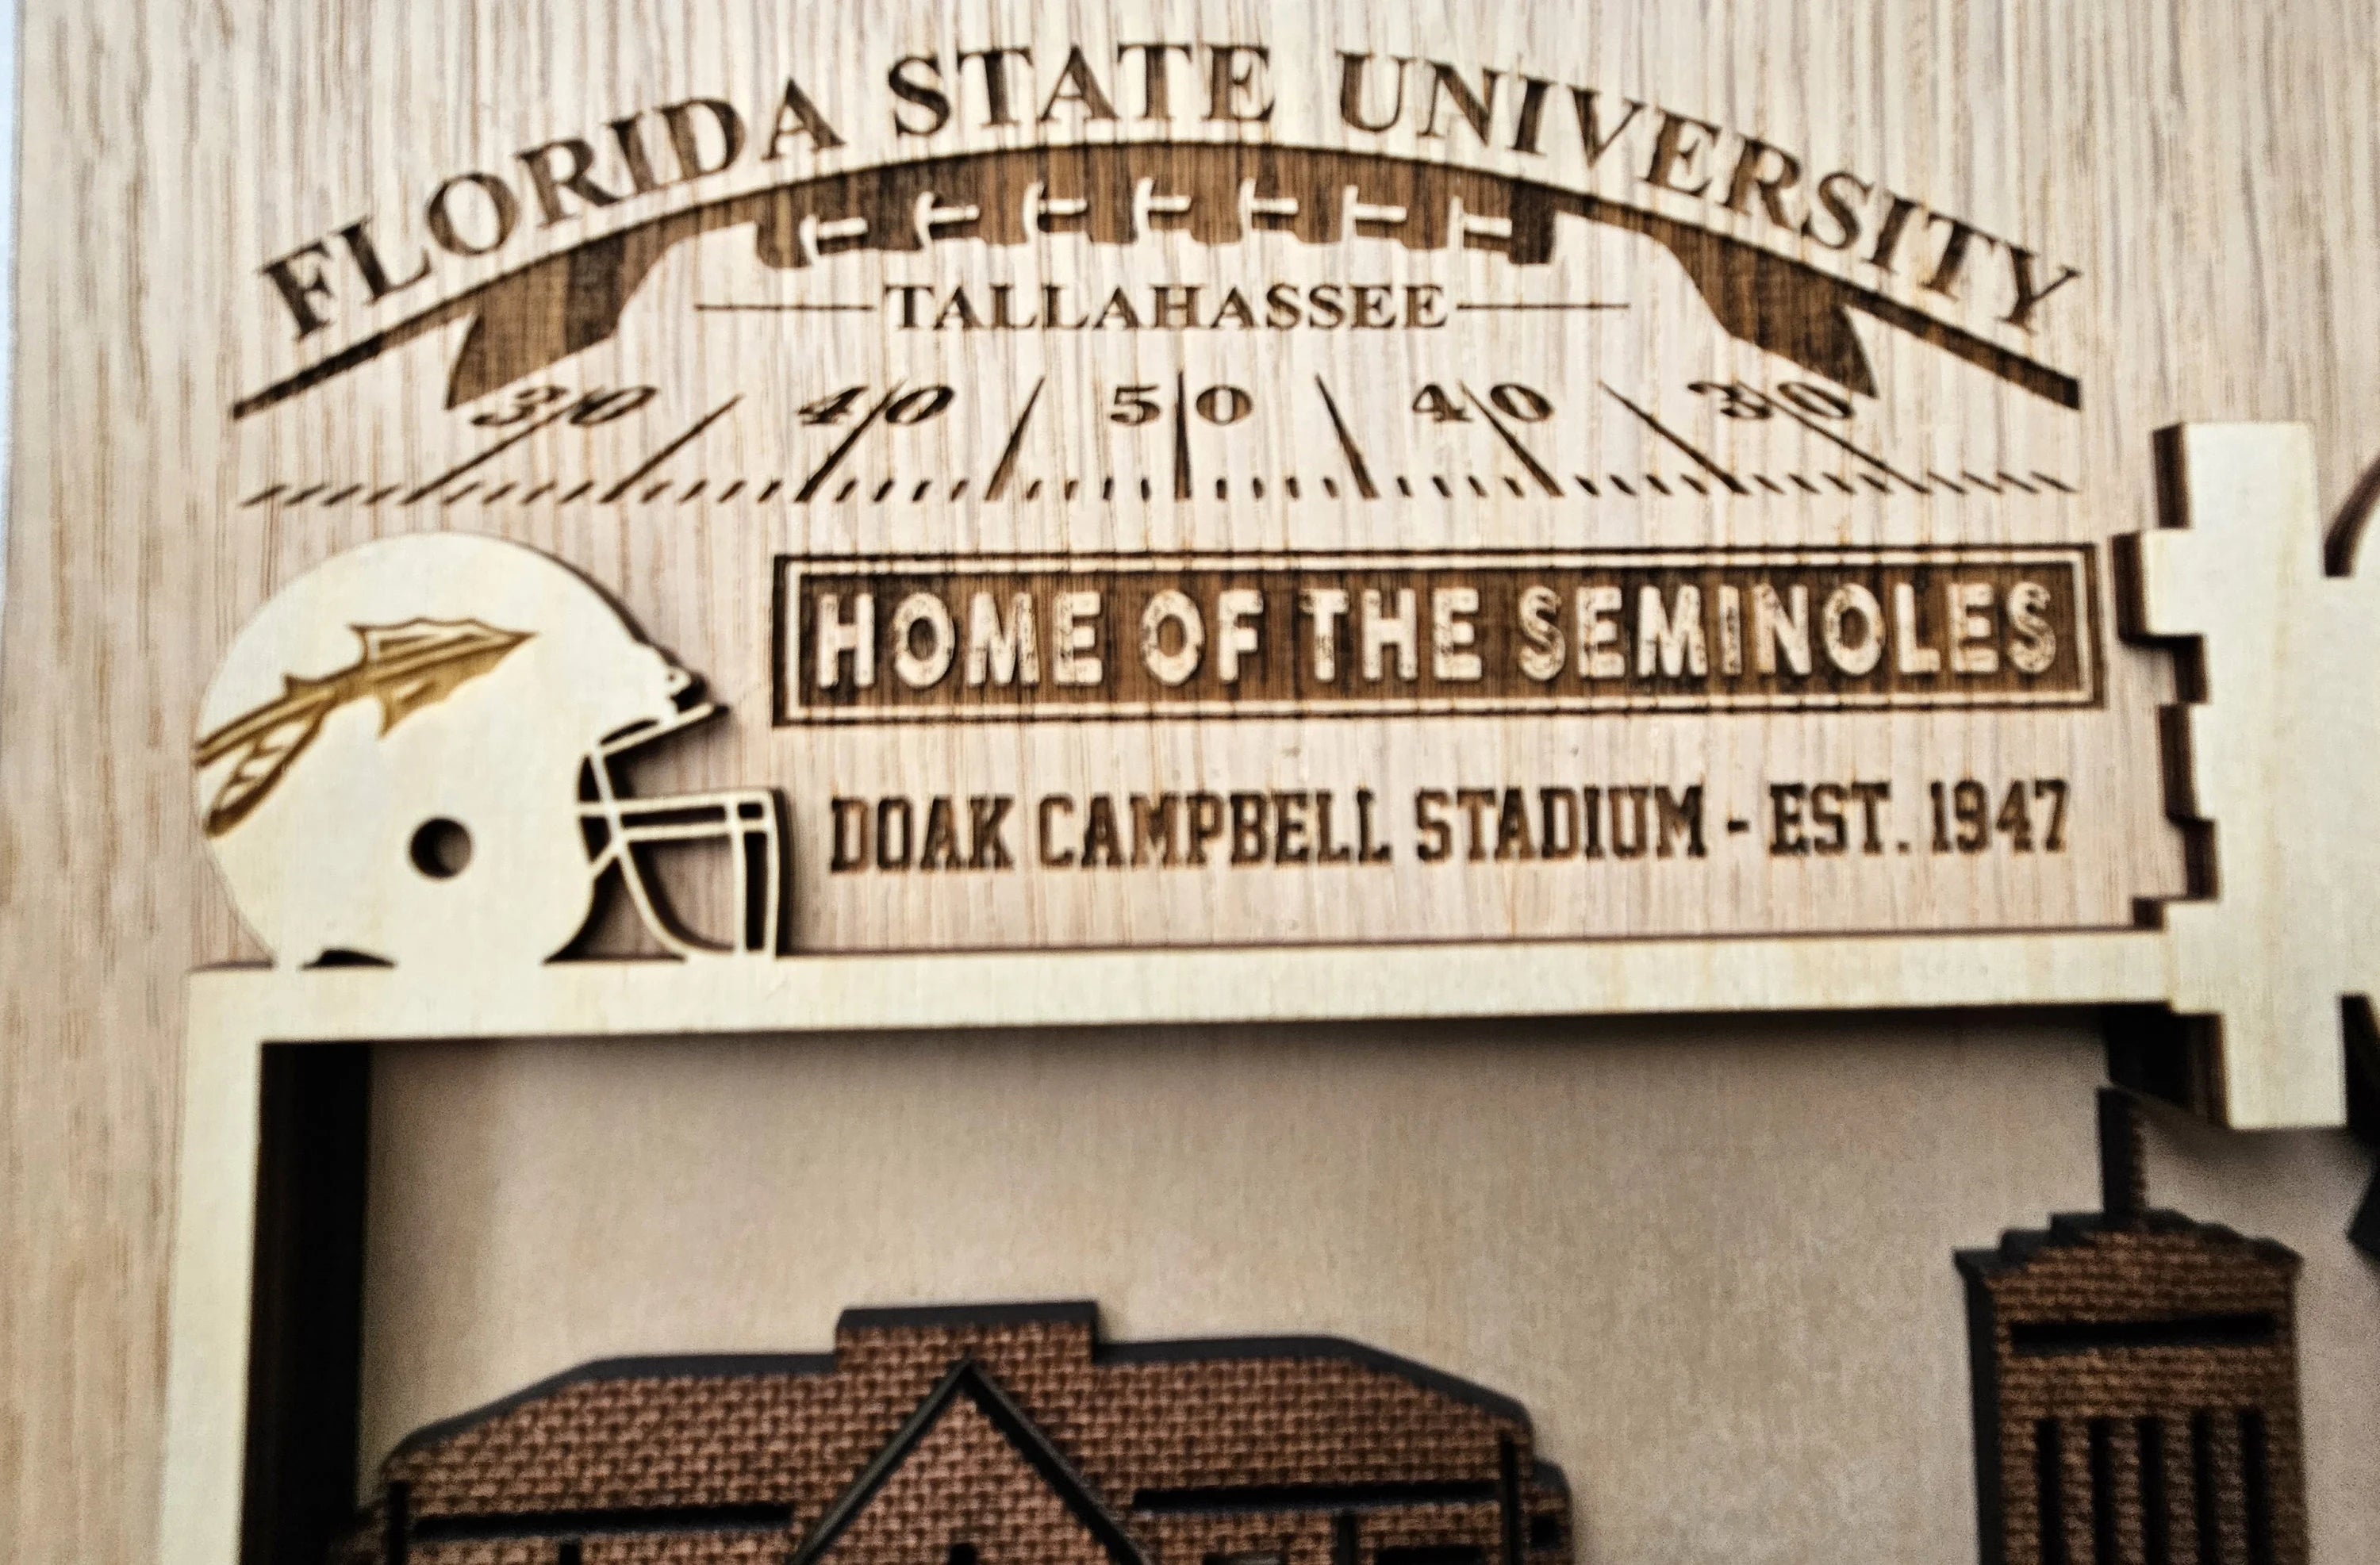 Doak Campbell Stadium - Home of Florida State Seminoles